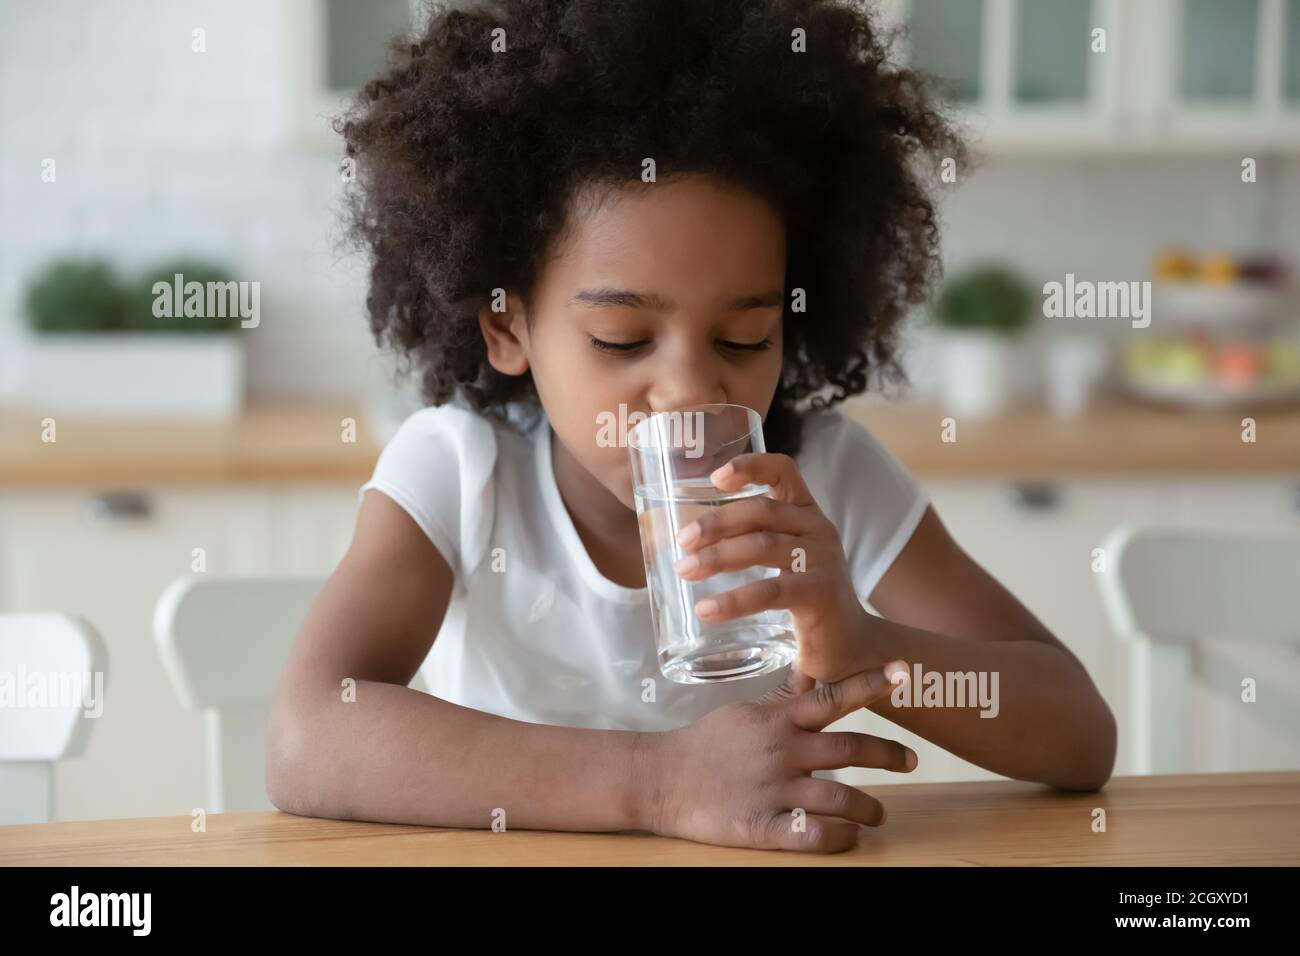 Bambino assetato immagini e fotografie stock ad alta risoluzione - Alamy